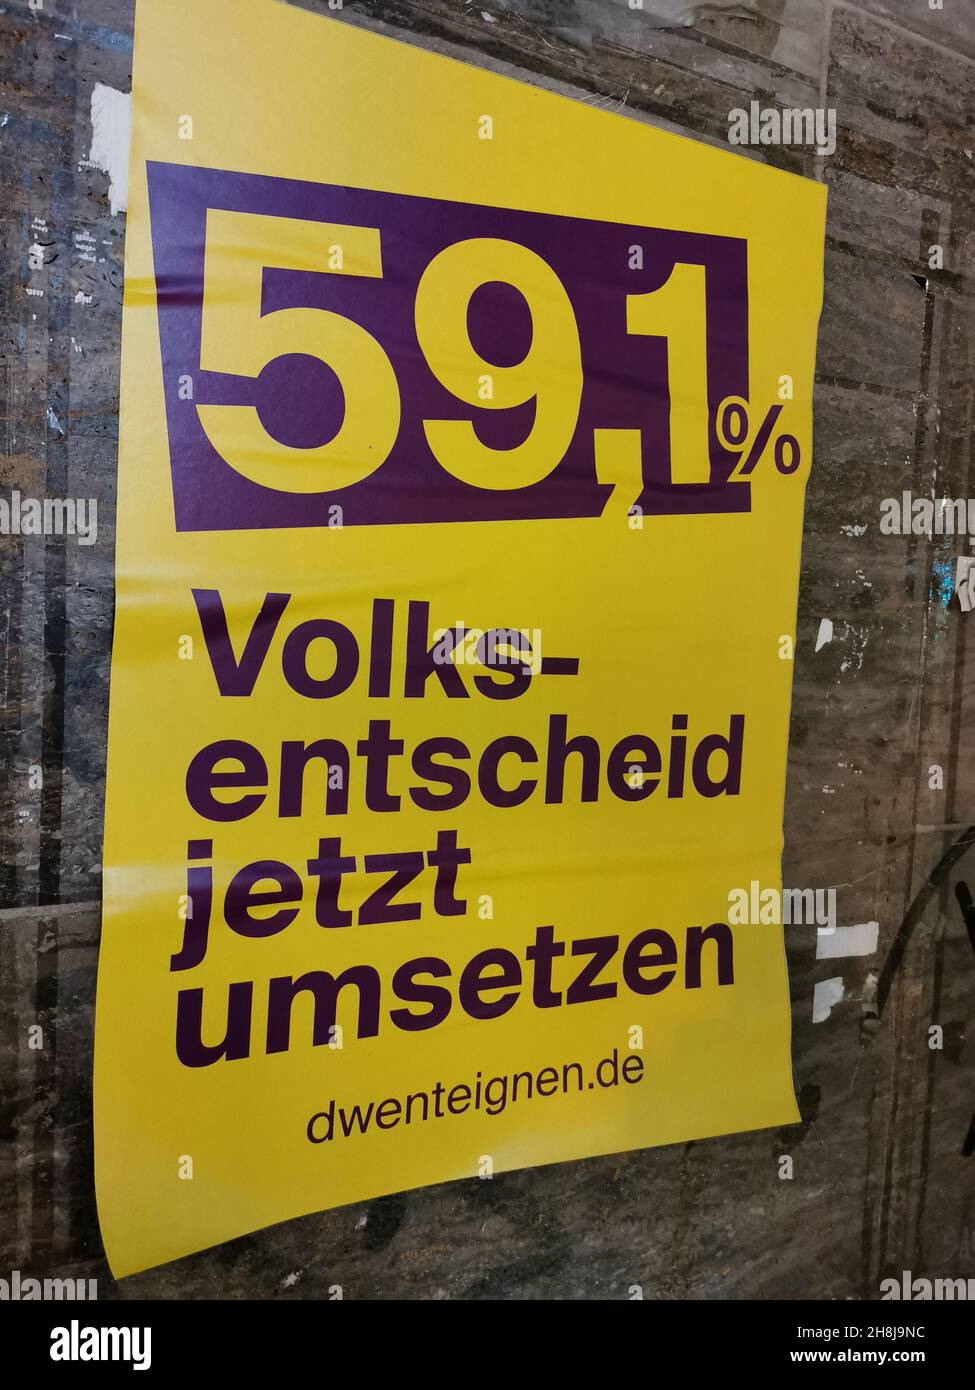 Ein Plakat am Bahnhof Zoo - 59,1 % Volksentscheid jetzt umsetzten.Eine Initiative möchte die Gesellschaft Deutsche Wohnen zu enteignen. Stock Photo